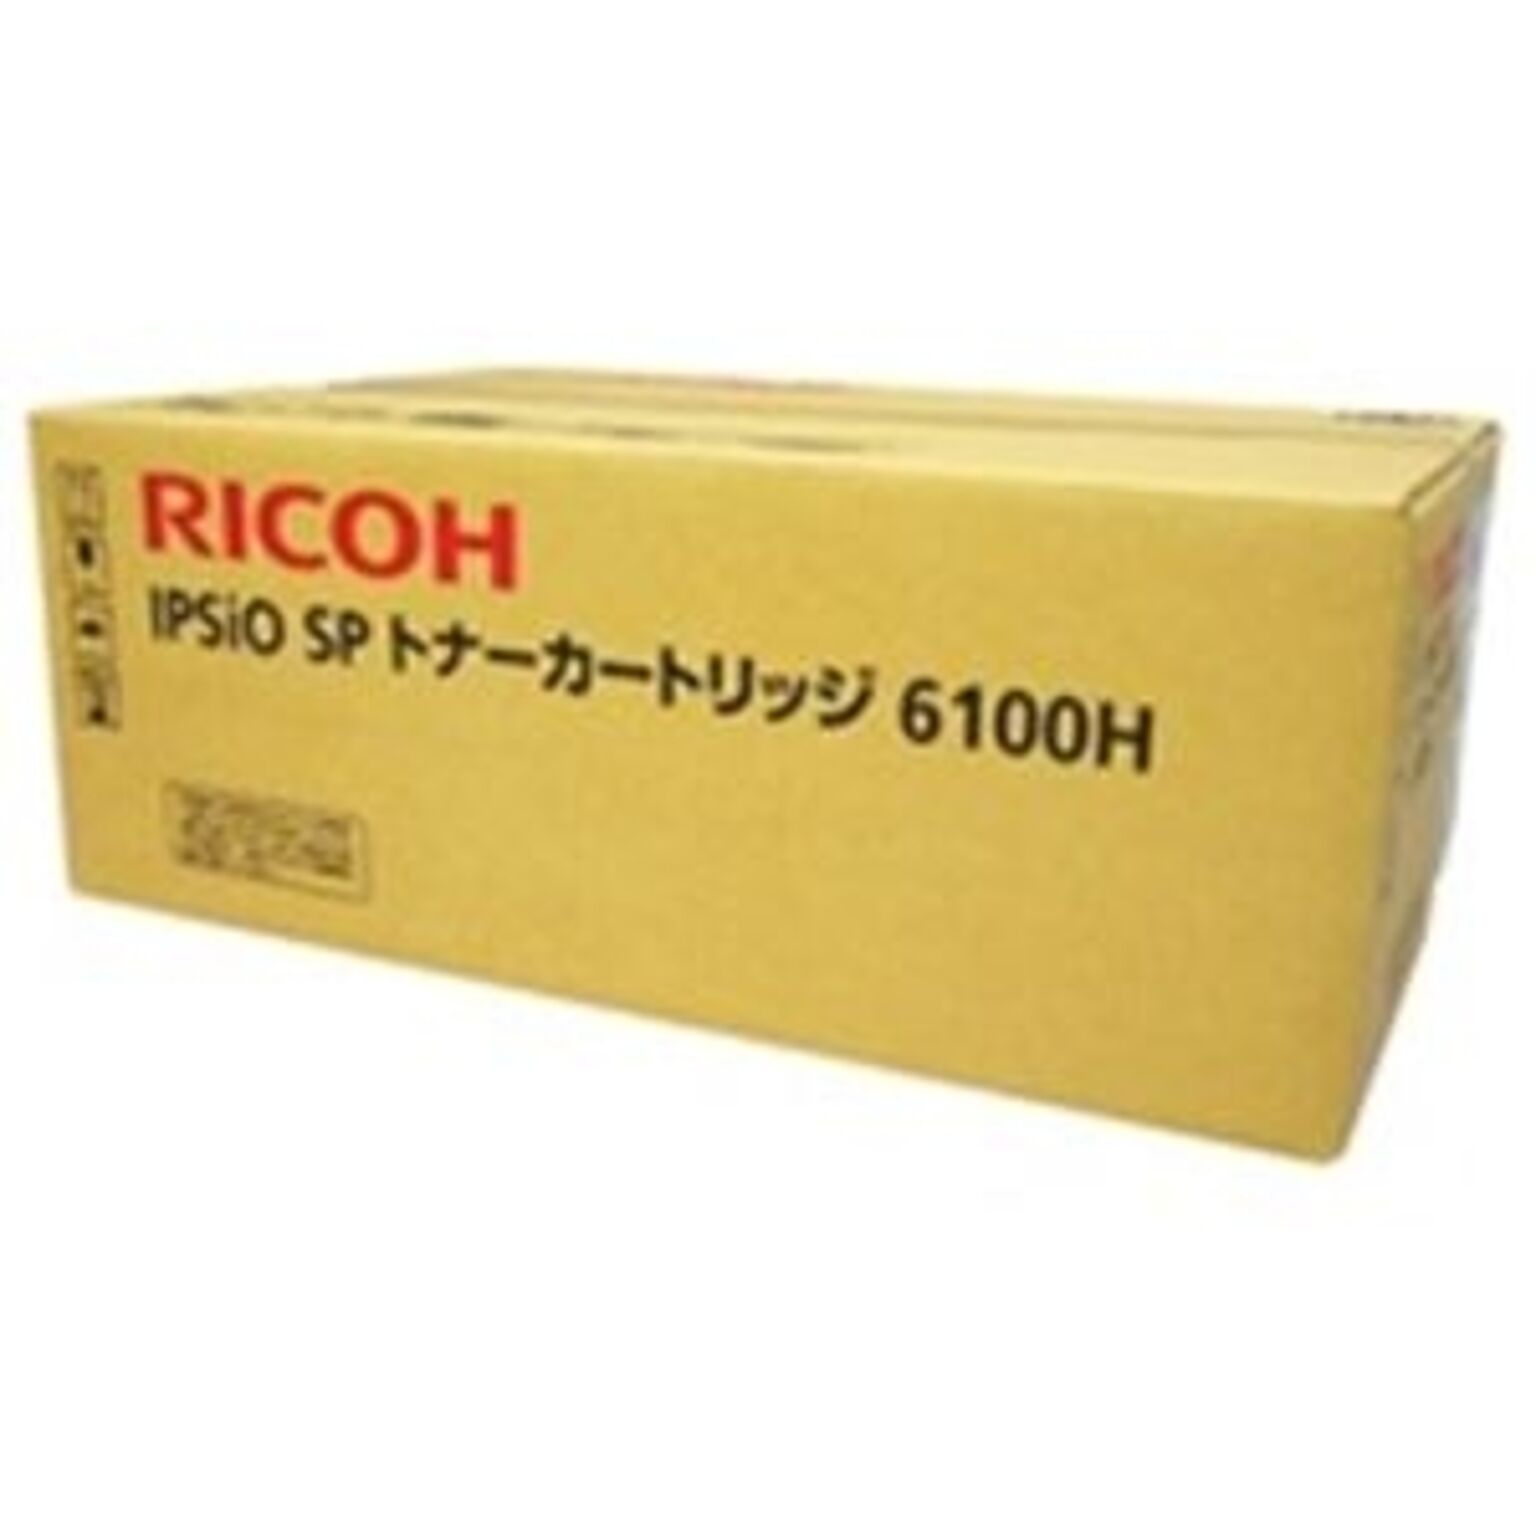 RICOH リコー トナーカートリッジ 純正 6100H レーザープリンター用 大容量 ブラック(黒) 通販 RoomClipショッピング